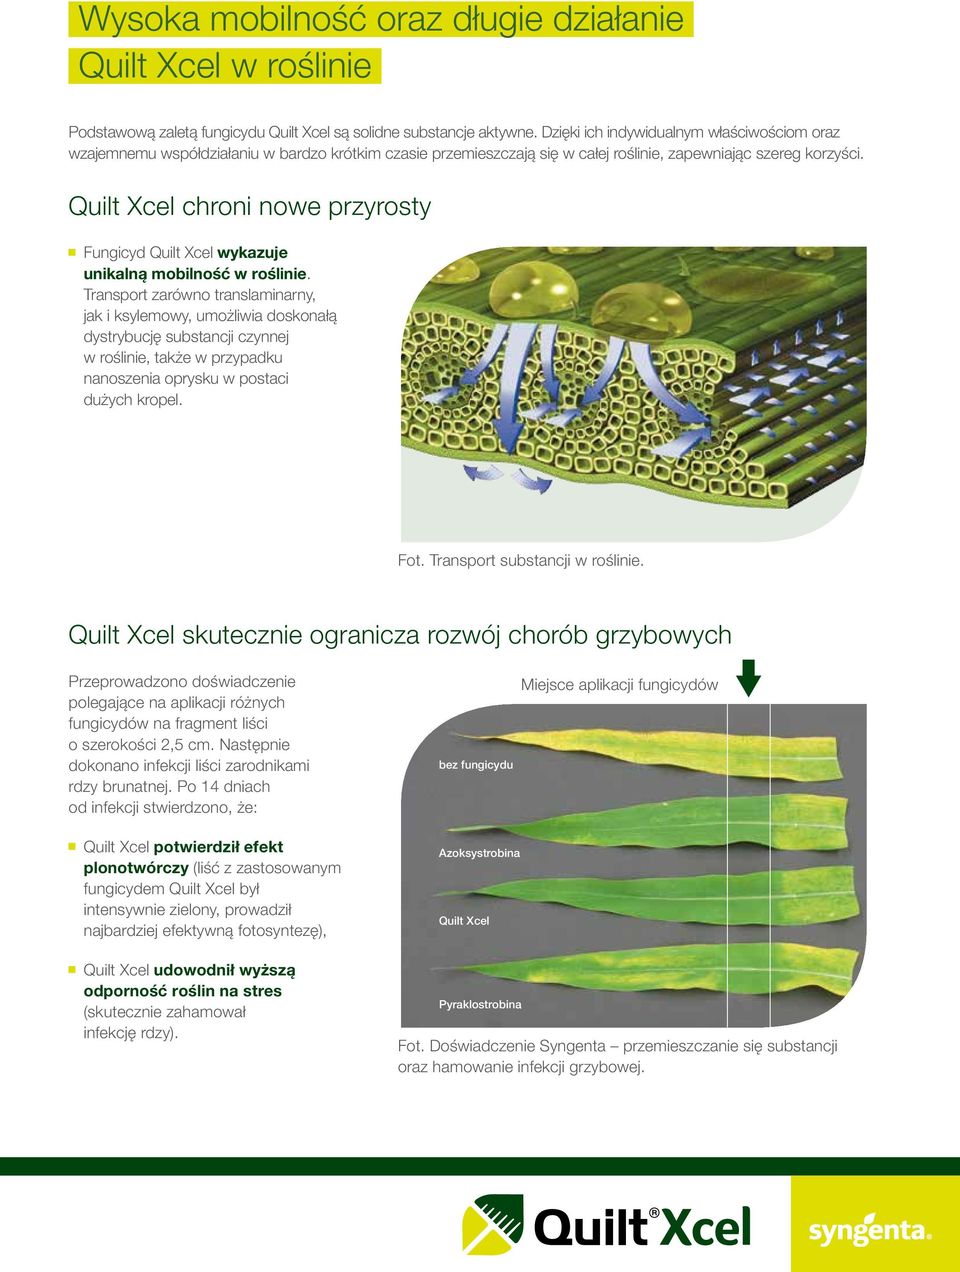 Quilt Xcel chroni nowe przyrosty Fungicyd Quilt Xcel wykazuje unikalną mobilność w roślinie.